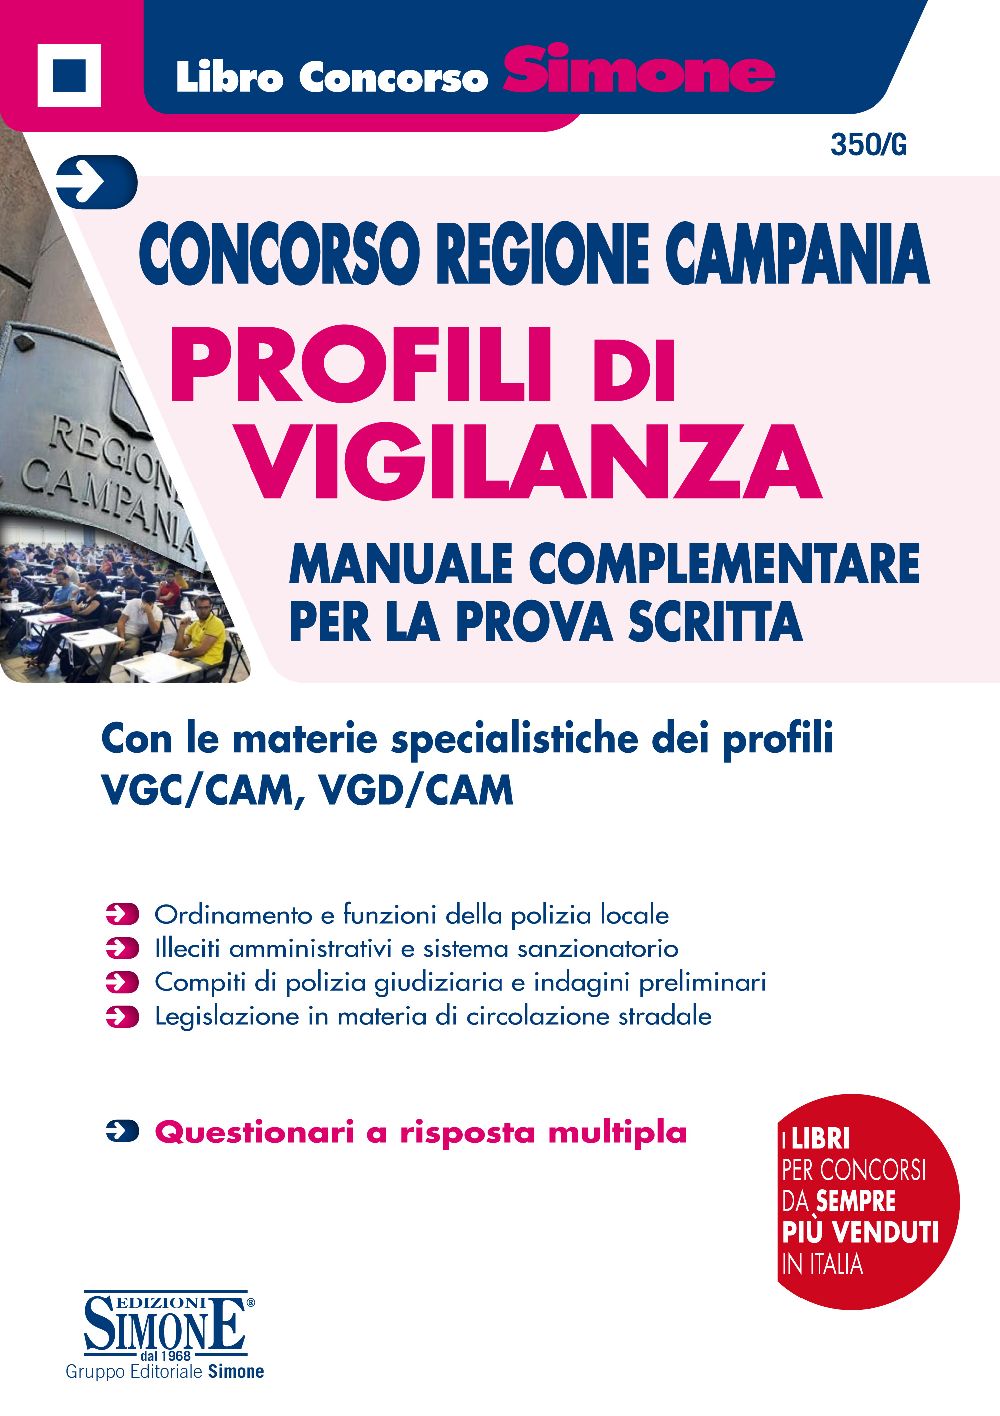 Concorso Regione Campania - Profili di Vigilanza - Manuale complementare per la prova scritta